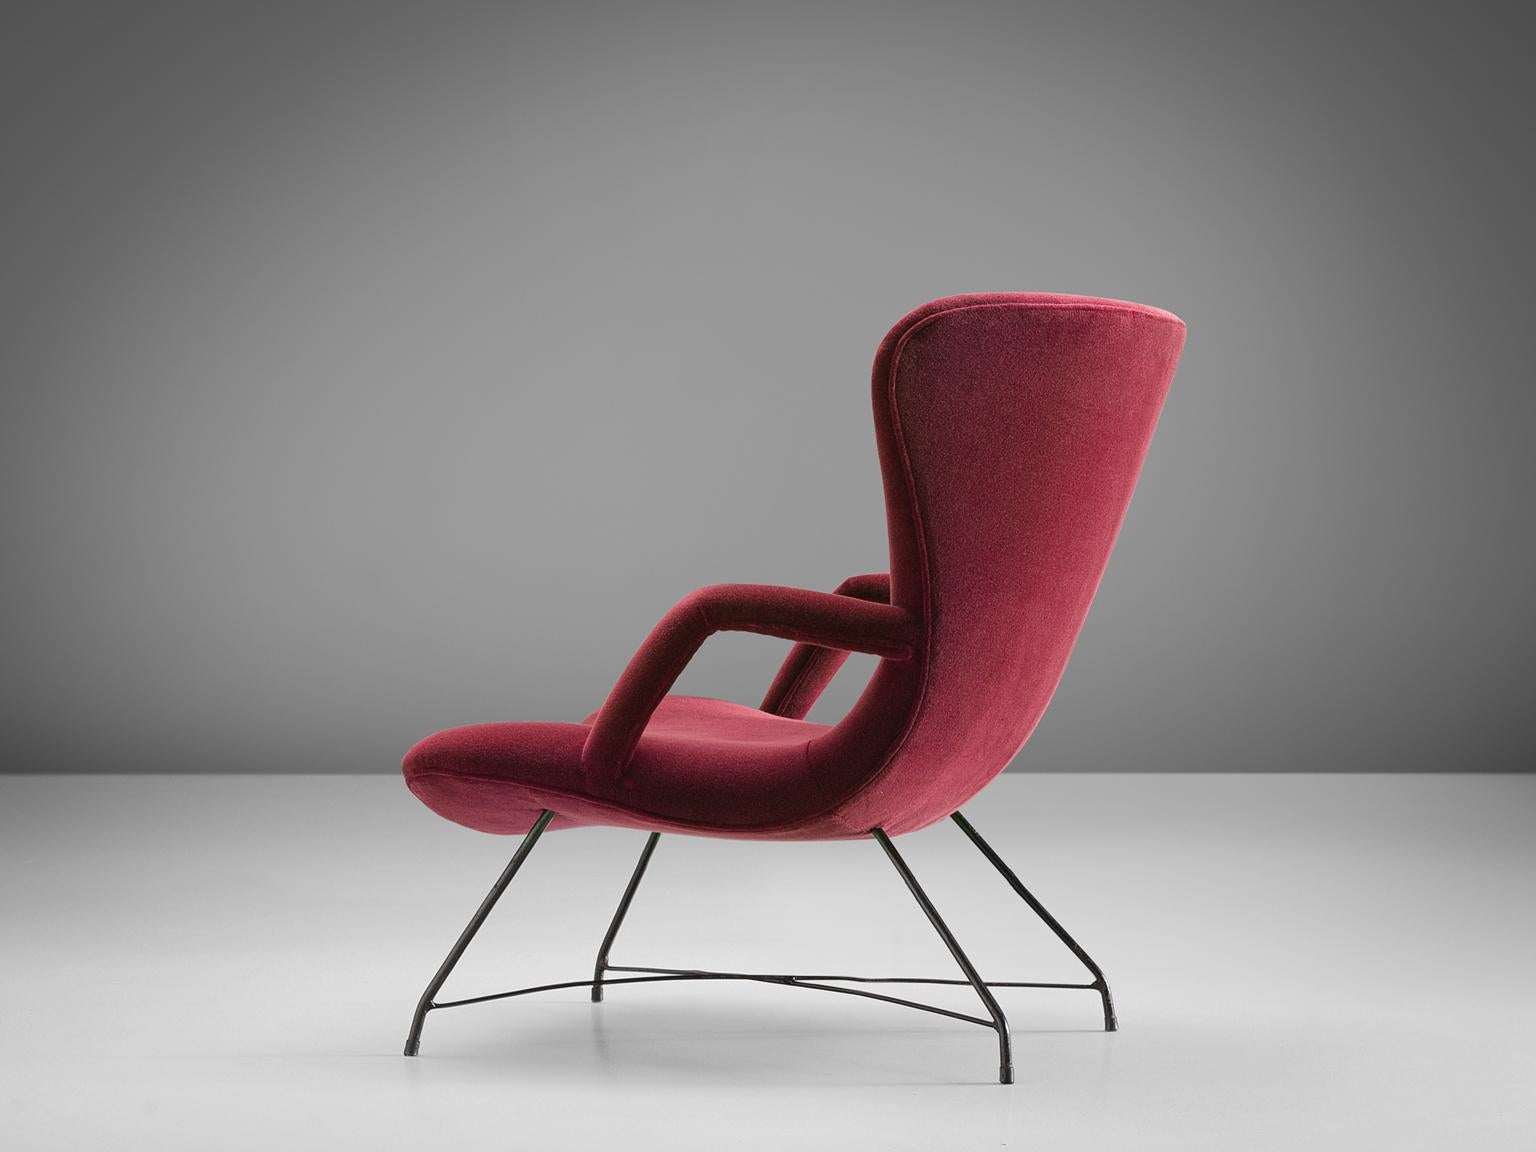 Brazilian Eisler & Hauner Pair of Reupholstered Burgundy Chair, 1950s